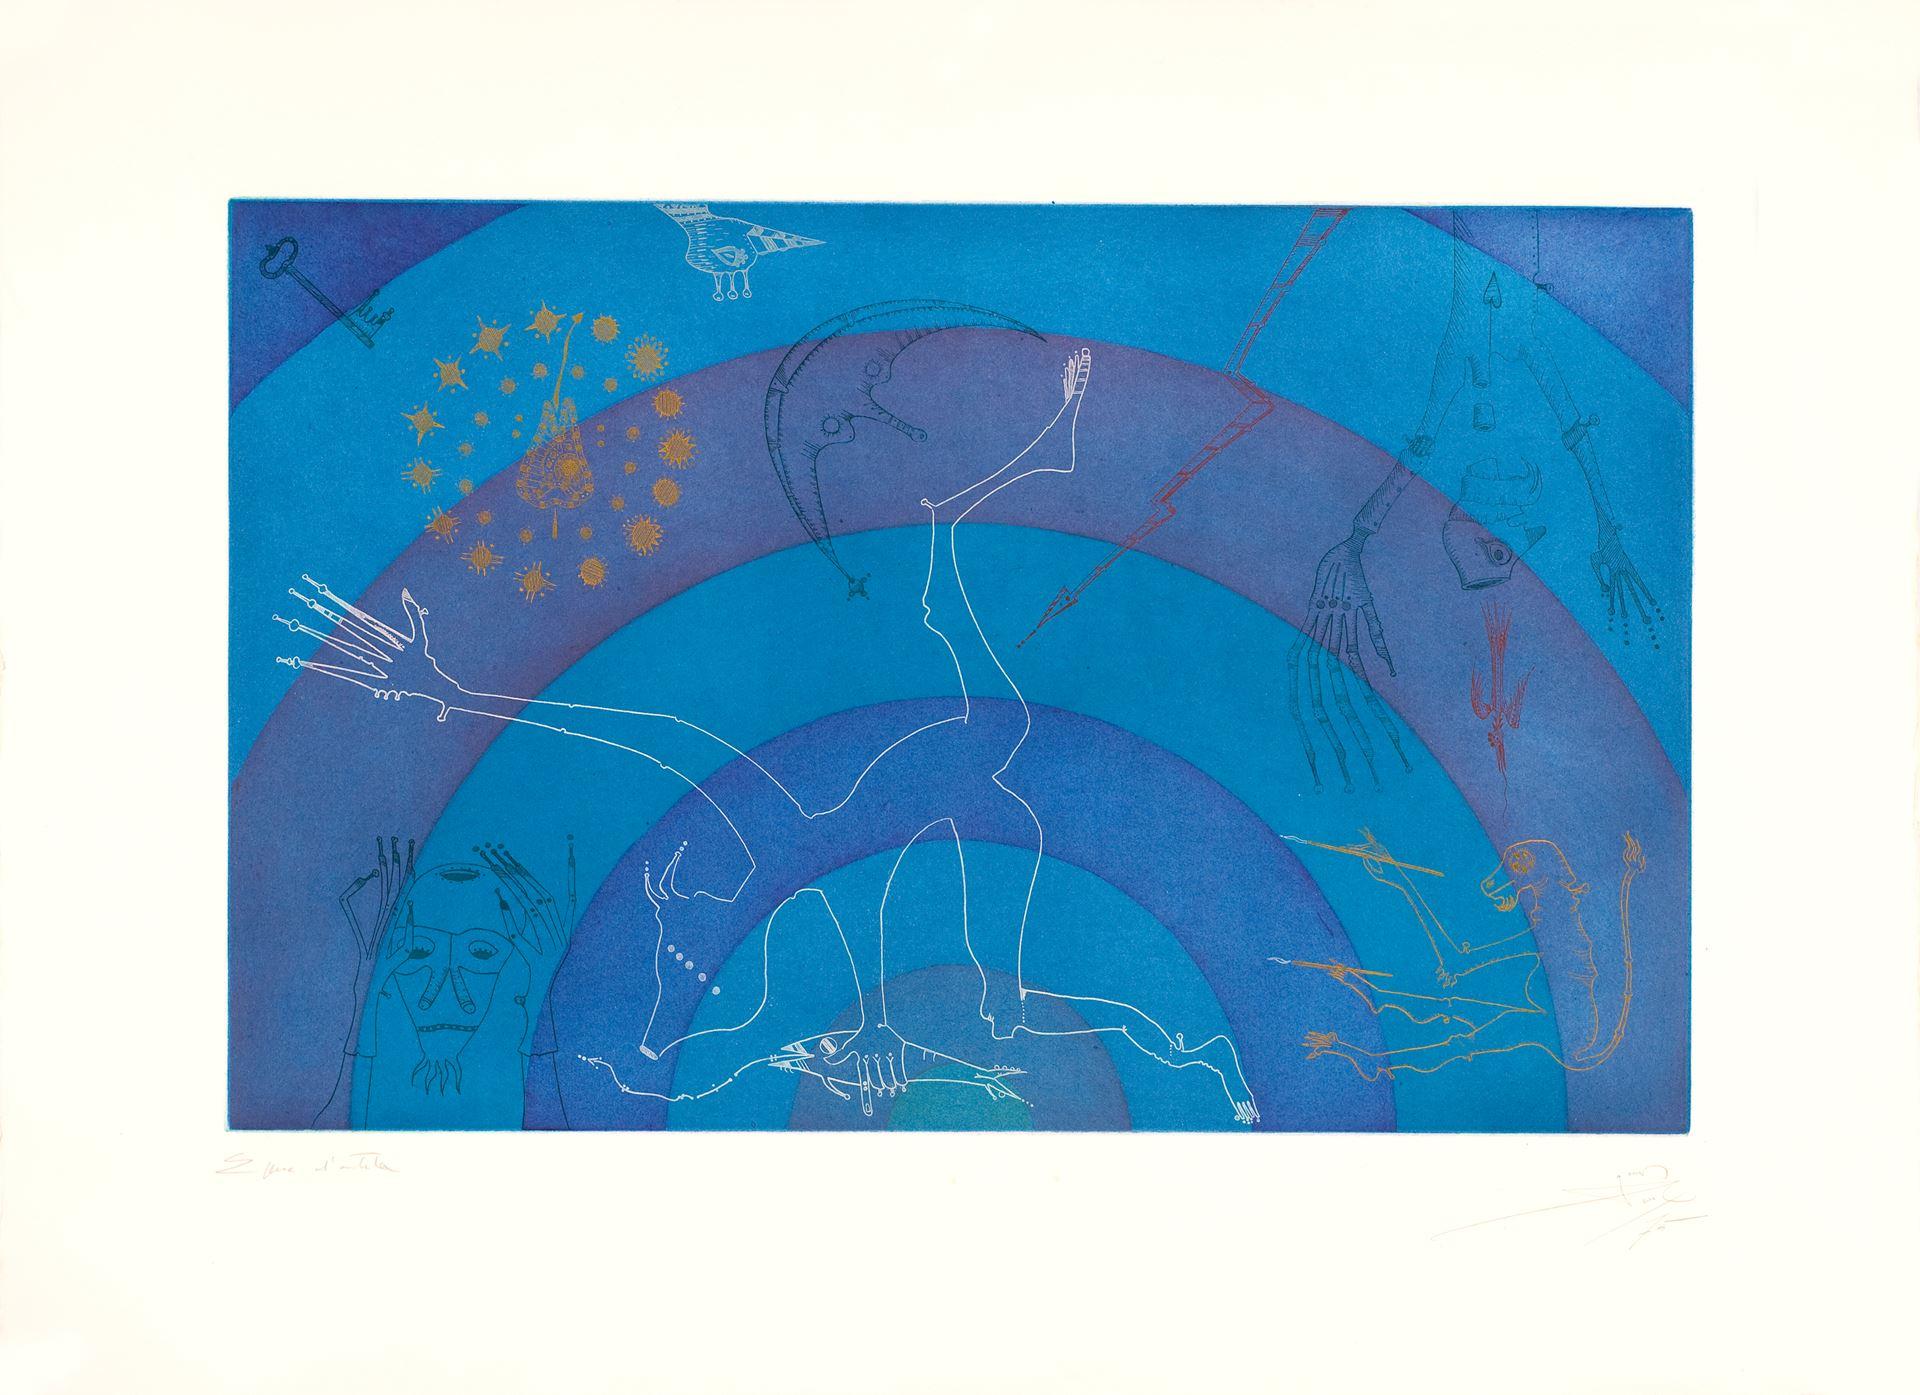 "Joan Ponç (Espagne, 1927-1984)
Arcoiris", 1975
gravure sur papier
22.1 x 30 in. (56 x 76 cm)
ID : PON1135-015-000"
_______________________________________________________
"Joan Ponç était un artiste espagnol et l'un des plus importants